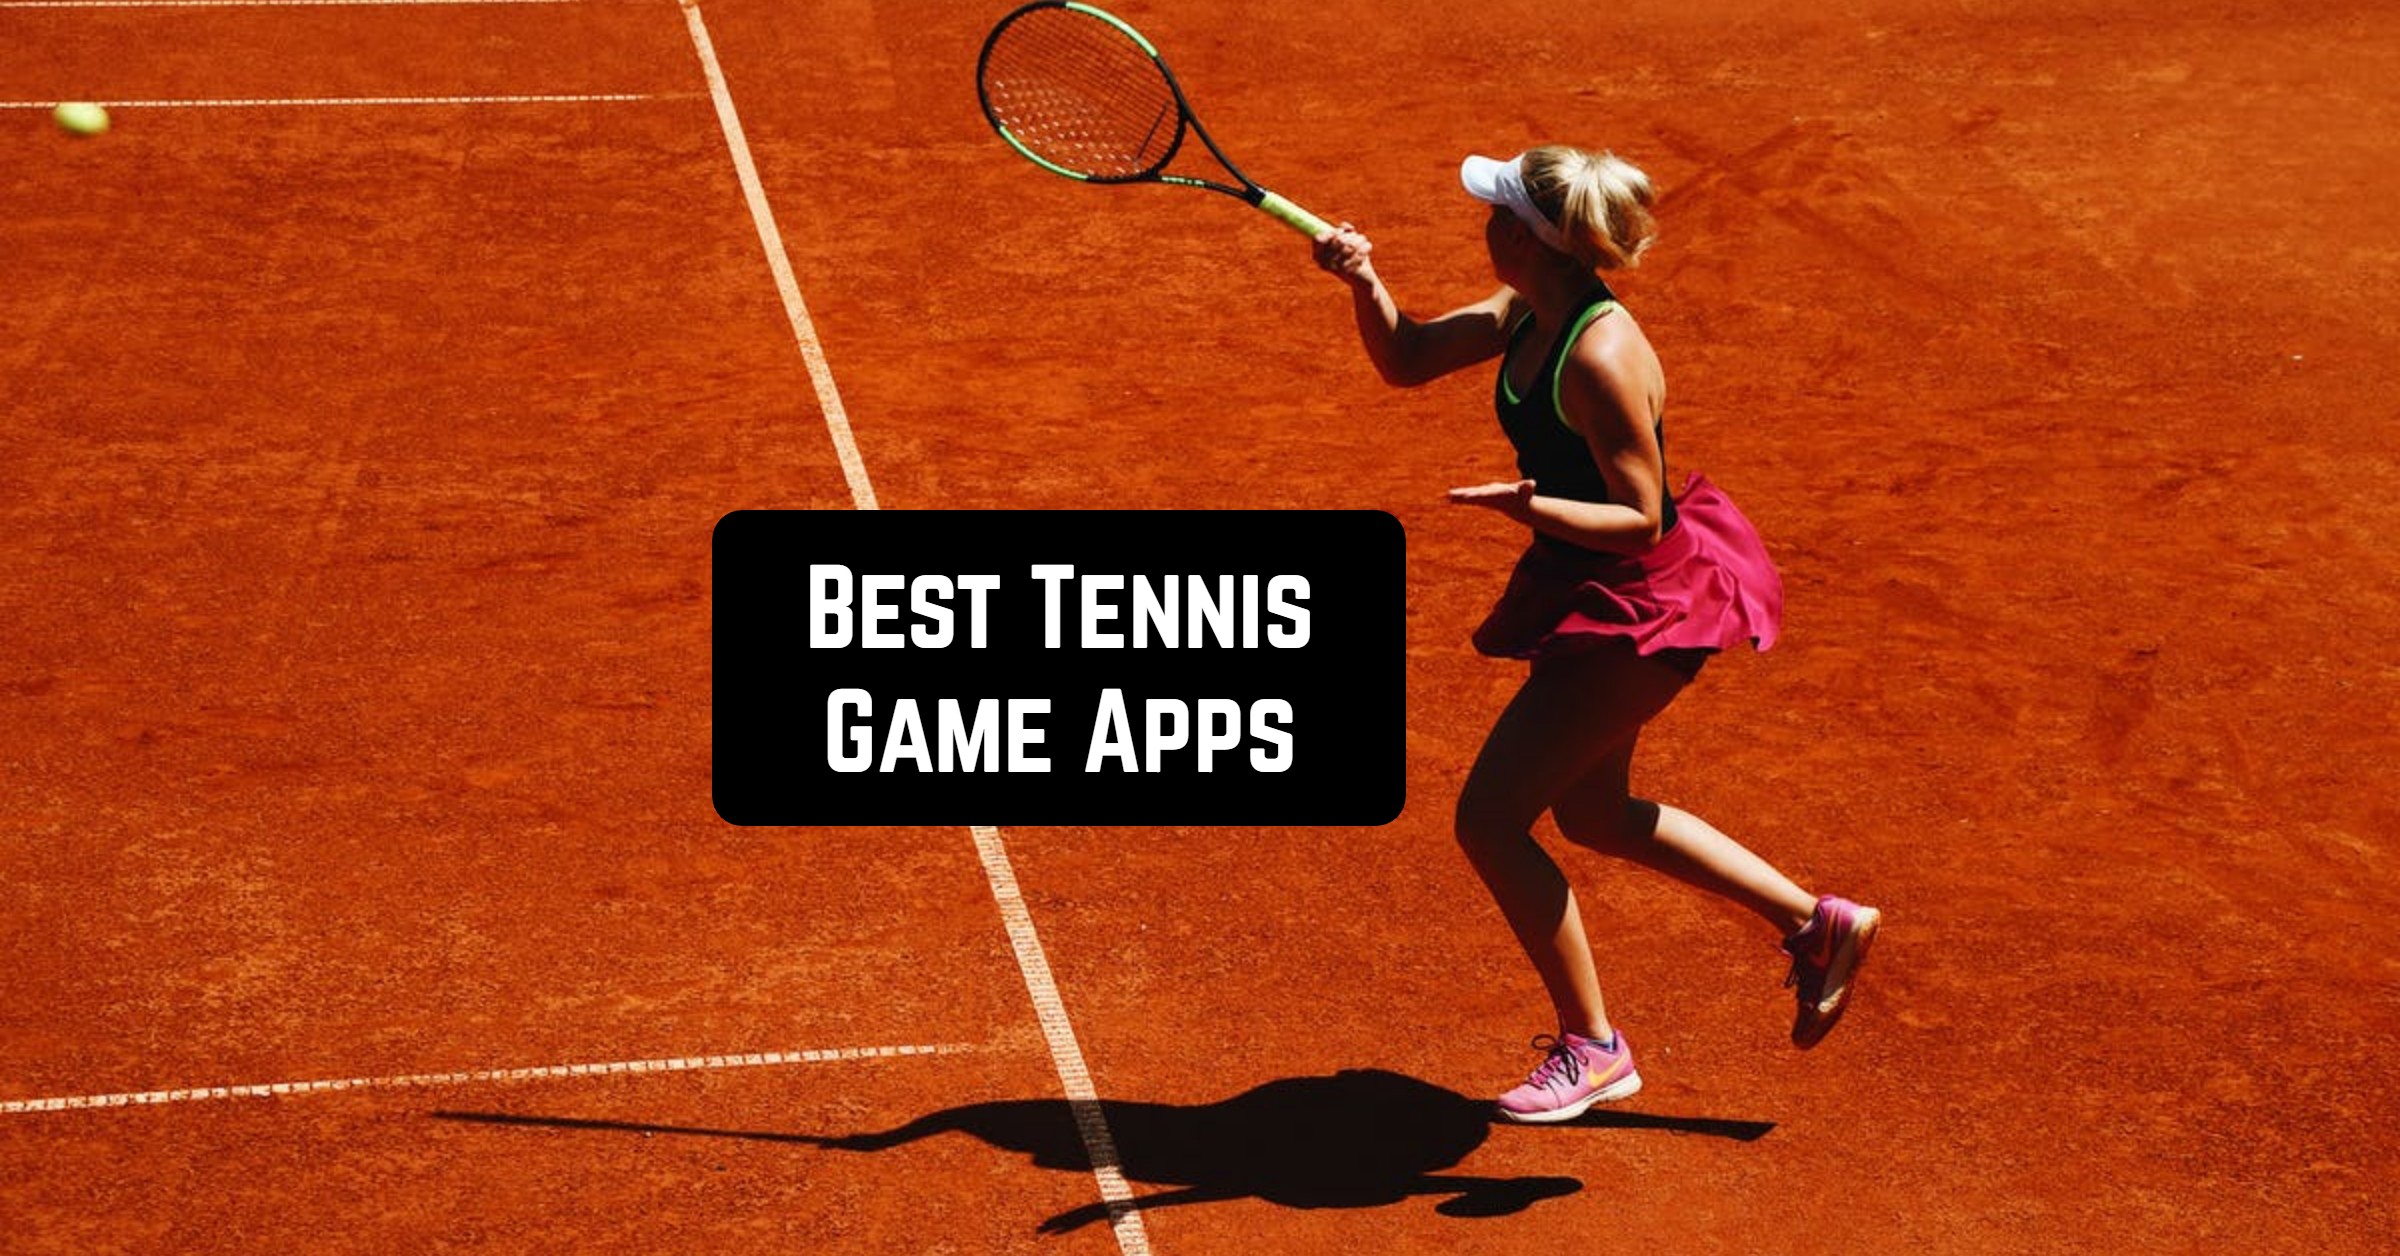 She plays tennis well. Внутренняя игра в теннис. Теннис на экране. Обои теннис на айфон. Живые обои для айфона теннис.